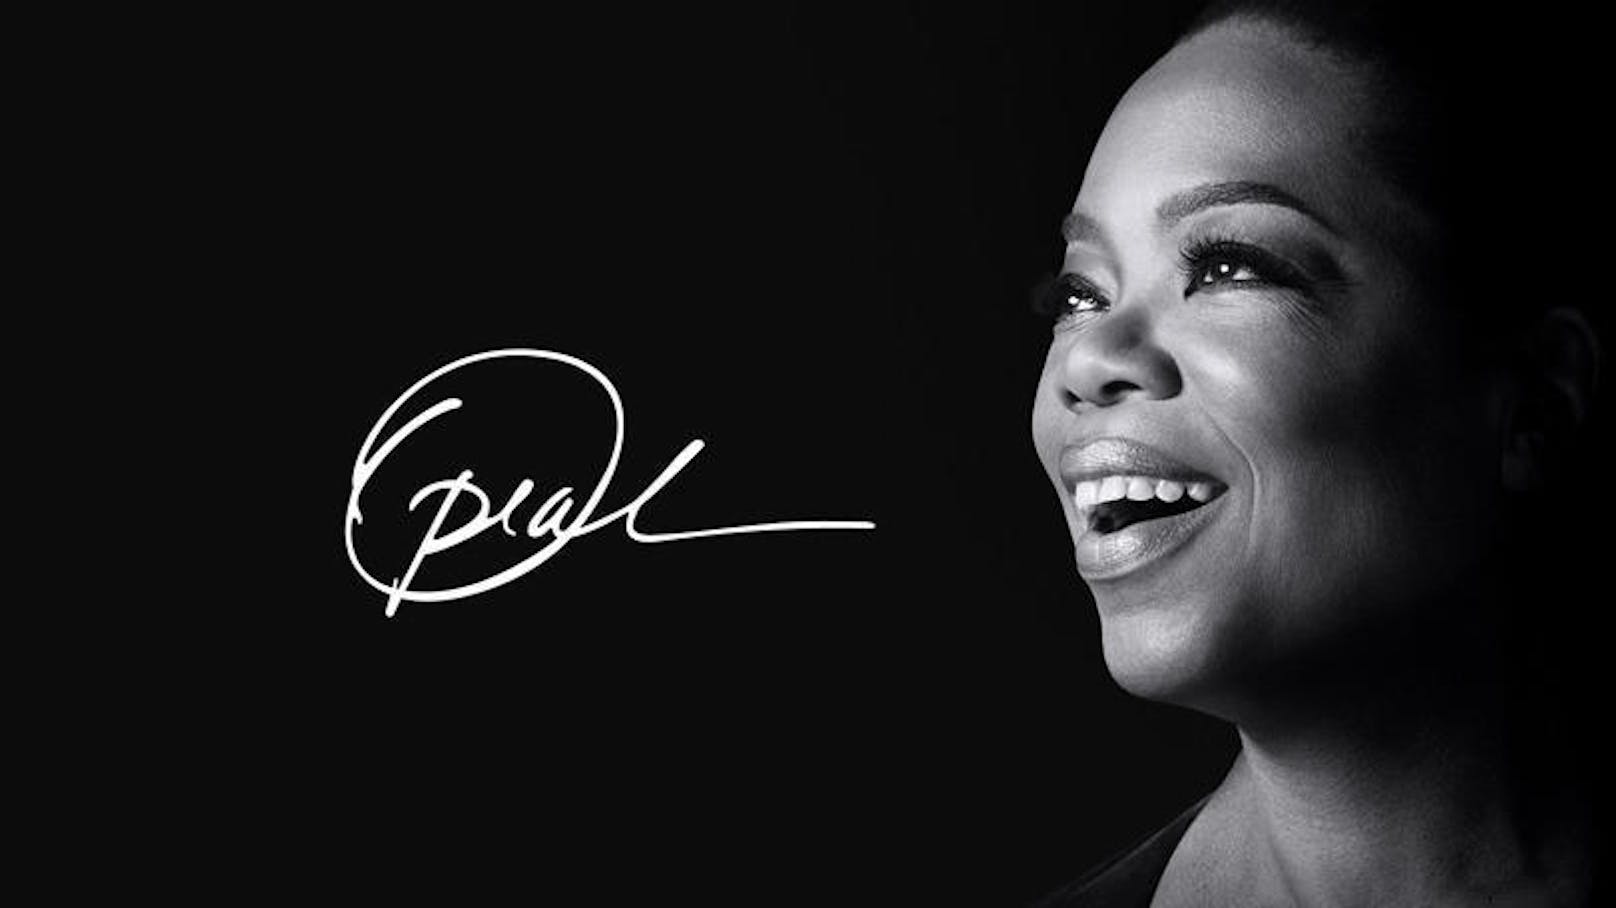 Oprah Winfrey erhält auf Apple TV+ ein Format, in dem sie mit den überzeugendsten Autoren der Welt spricht, während sie eine lebendige, globale Buchclub-Gemeinschaft und andere Projekte aufbaut, um sich mit Menschen auf der ganzen Welt zu verbinden und sinnvolle Wege zu teilen, um positive Veränderungen zu bewirken.